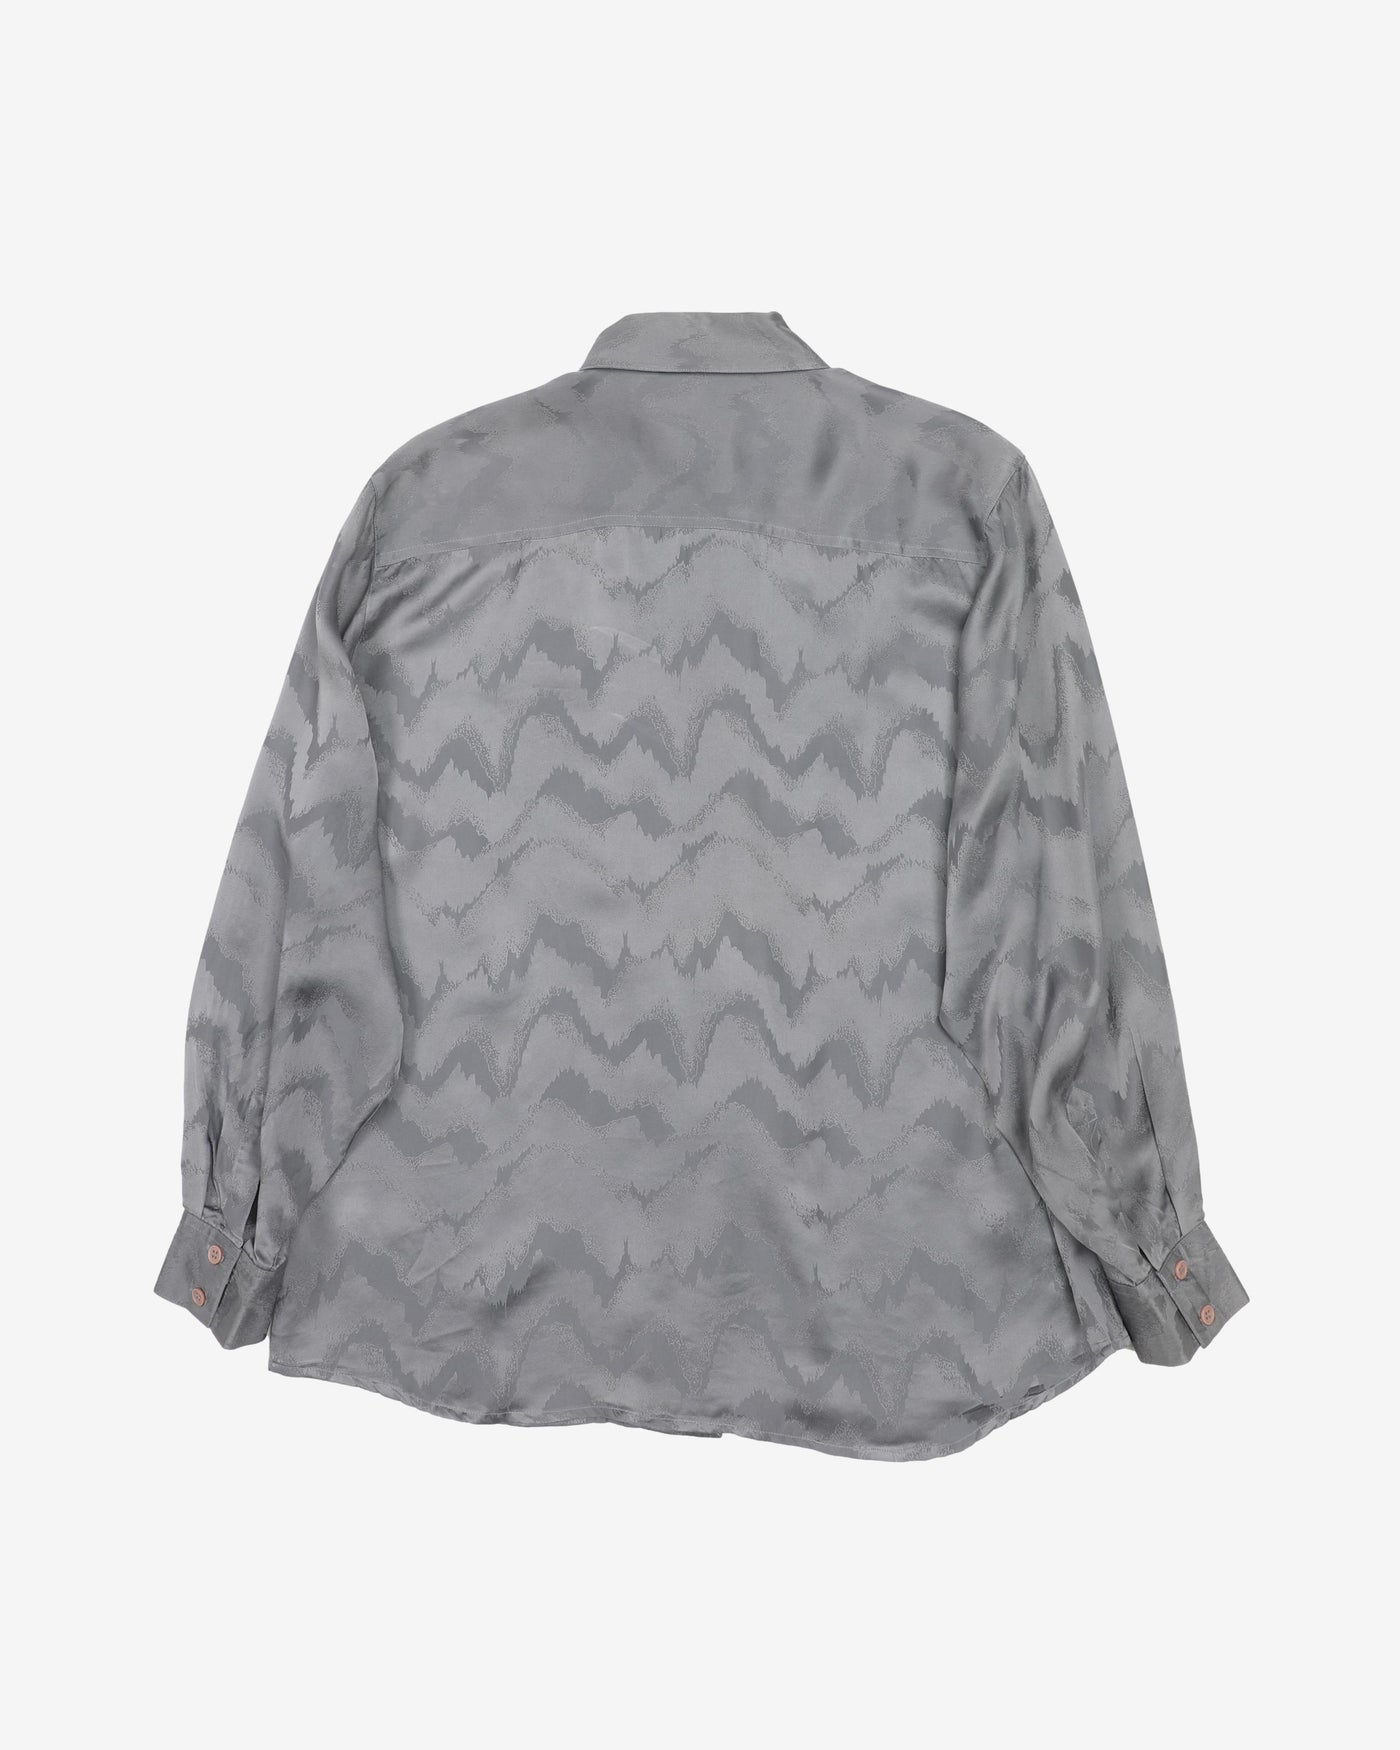 Silver grey silk jacquard blouse - M